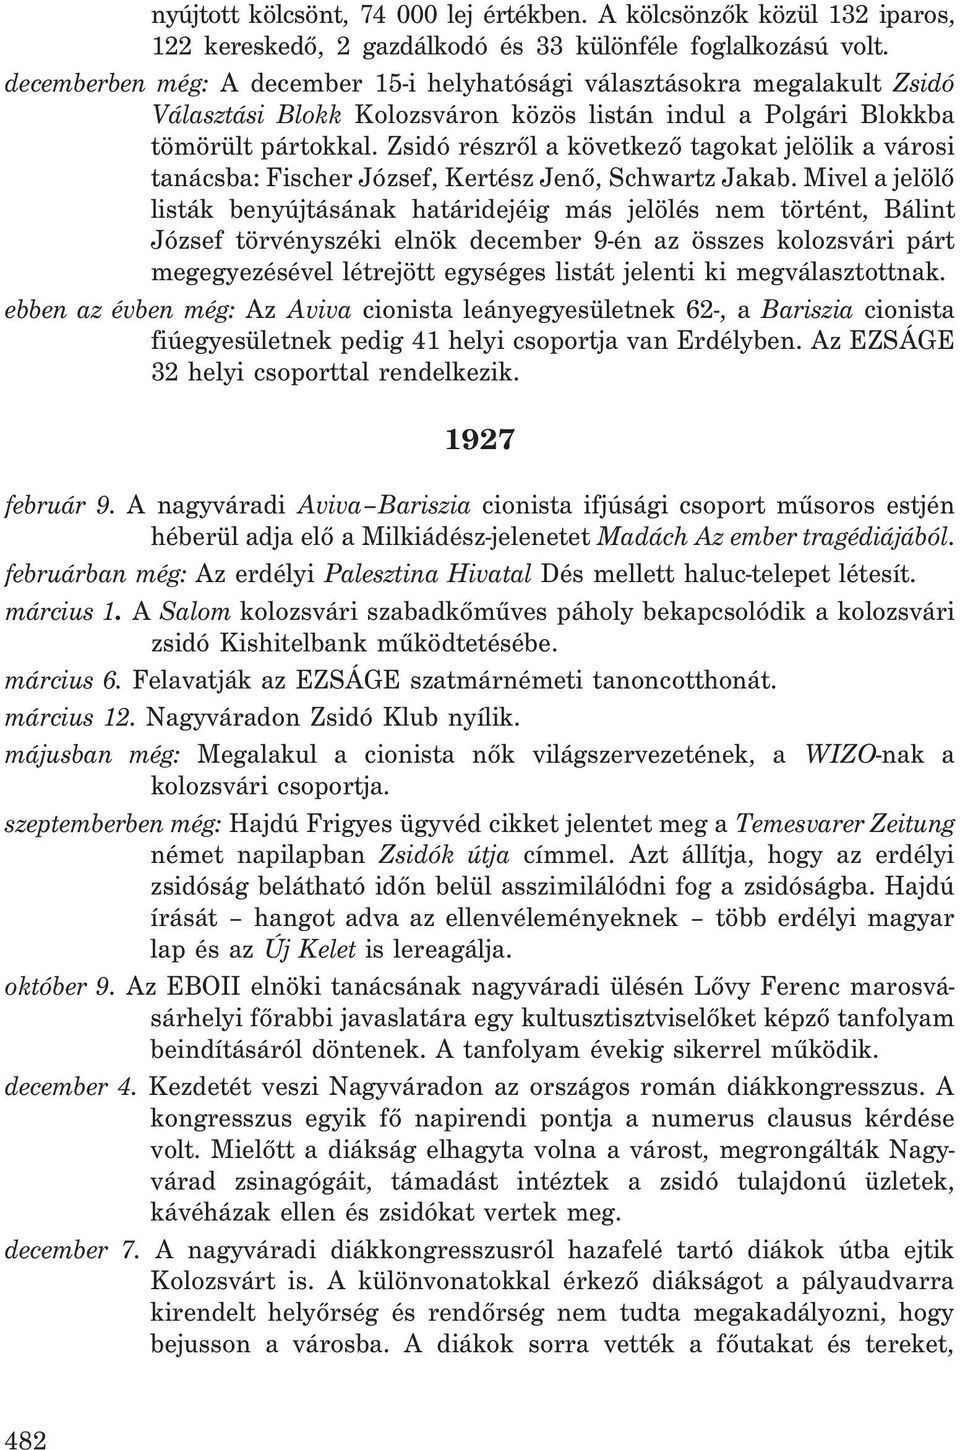 Zsidó részrõl a következõ tagokat jelölik a városi tanácsba: Fischer József, Kertész Jenõ, Schwartz Jakab.